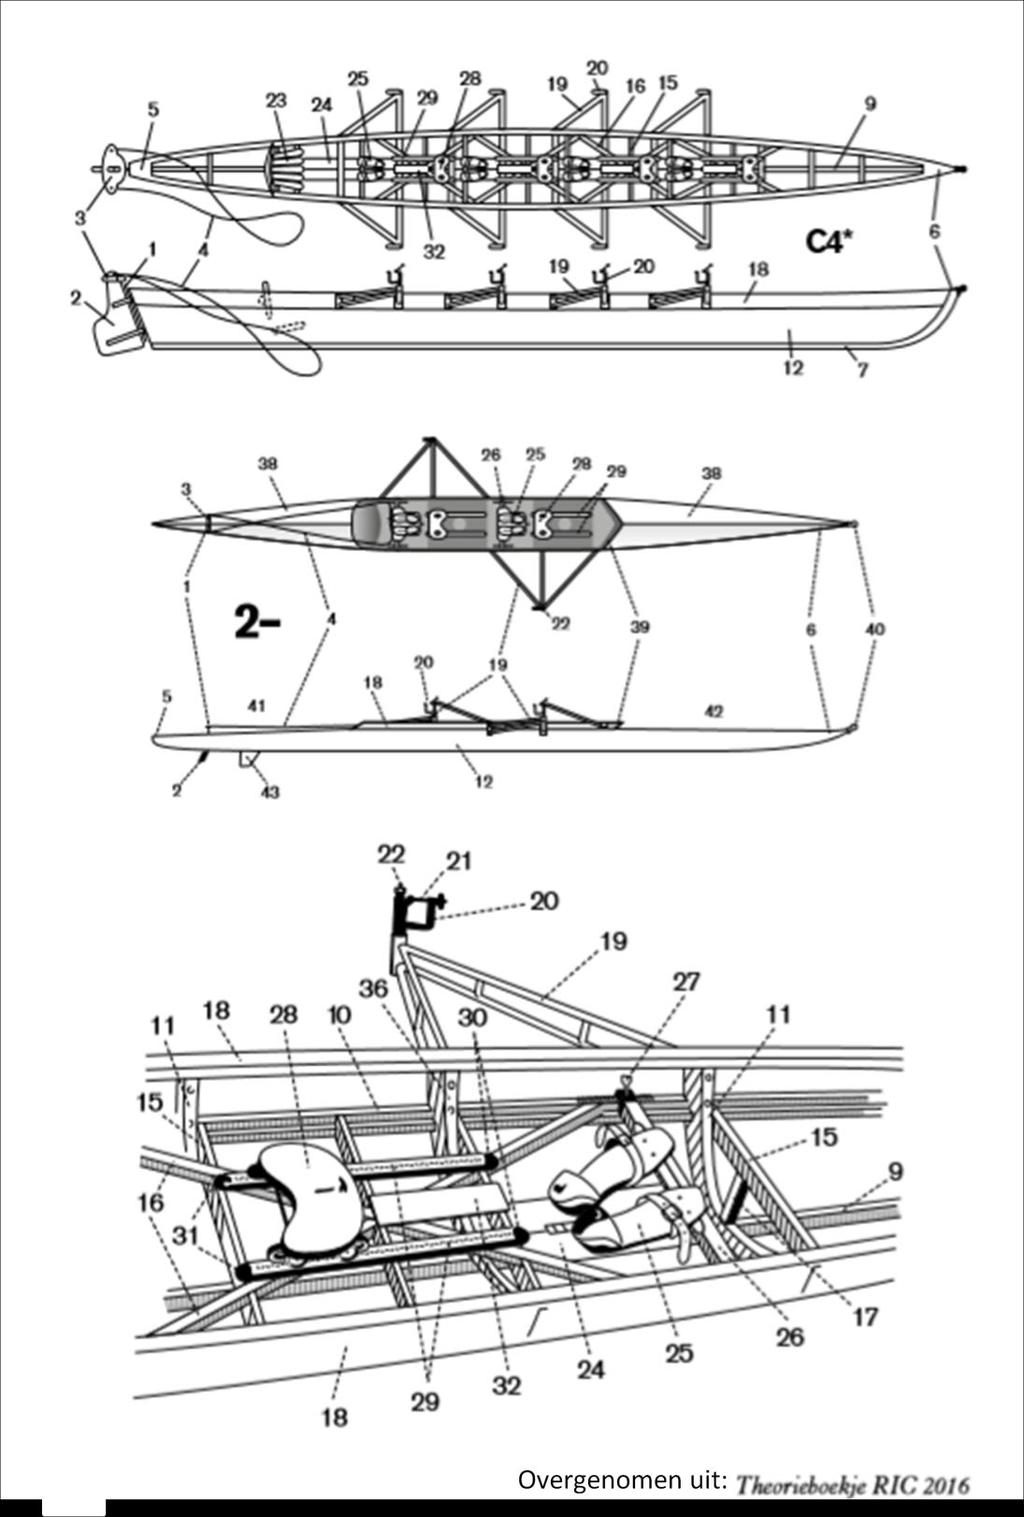 Materiaal namen van de boot: Figuur 1 Schema van een roeiboot met daarin aangegeven de